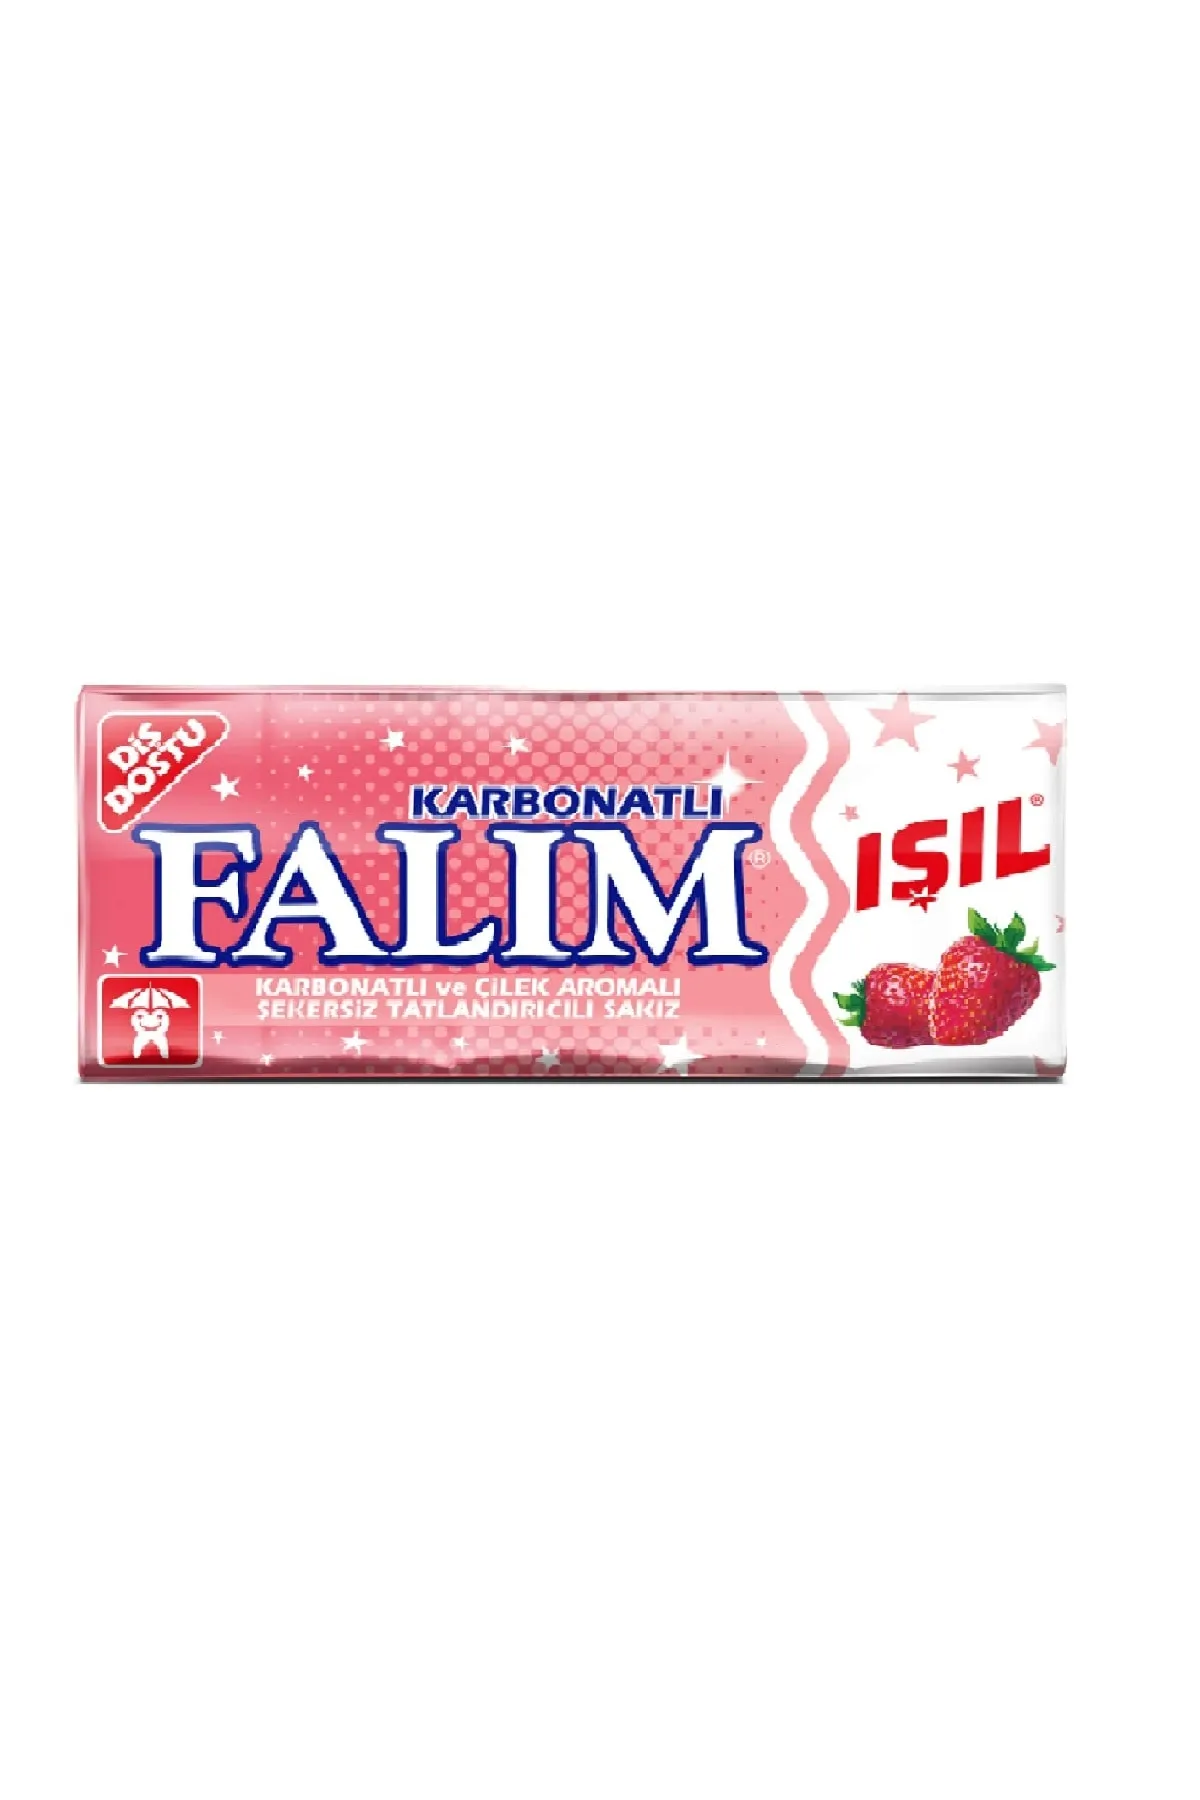 Falim Isil Gum with Carbonate and Strawberry 5 pieces / Falım Işıl Sakız  Karbonatlı ve Çilekli 5 adet - NOS Market Free Grocery Delivery, Biggest  Online Turkish Market in Toronto